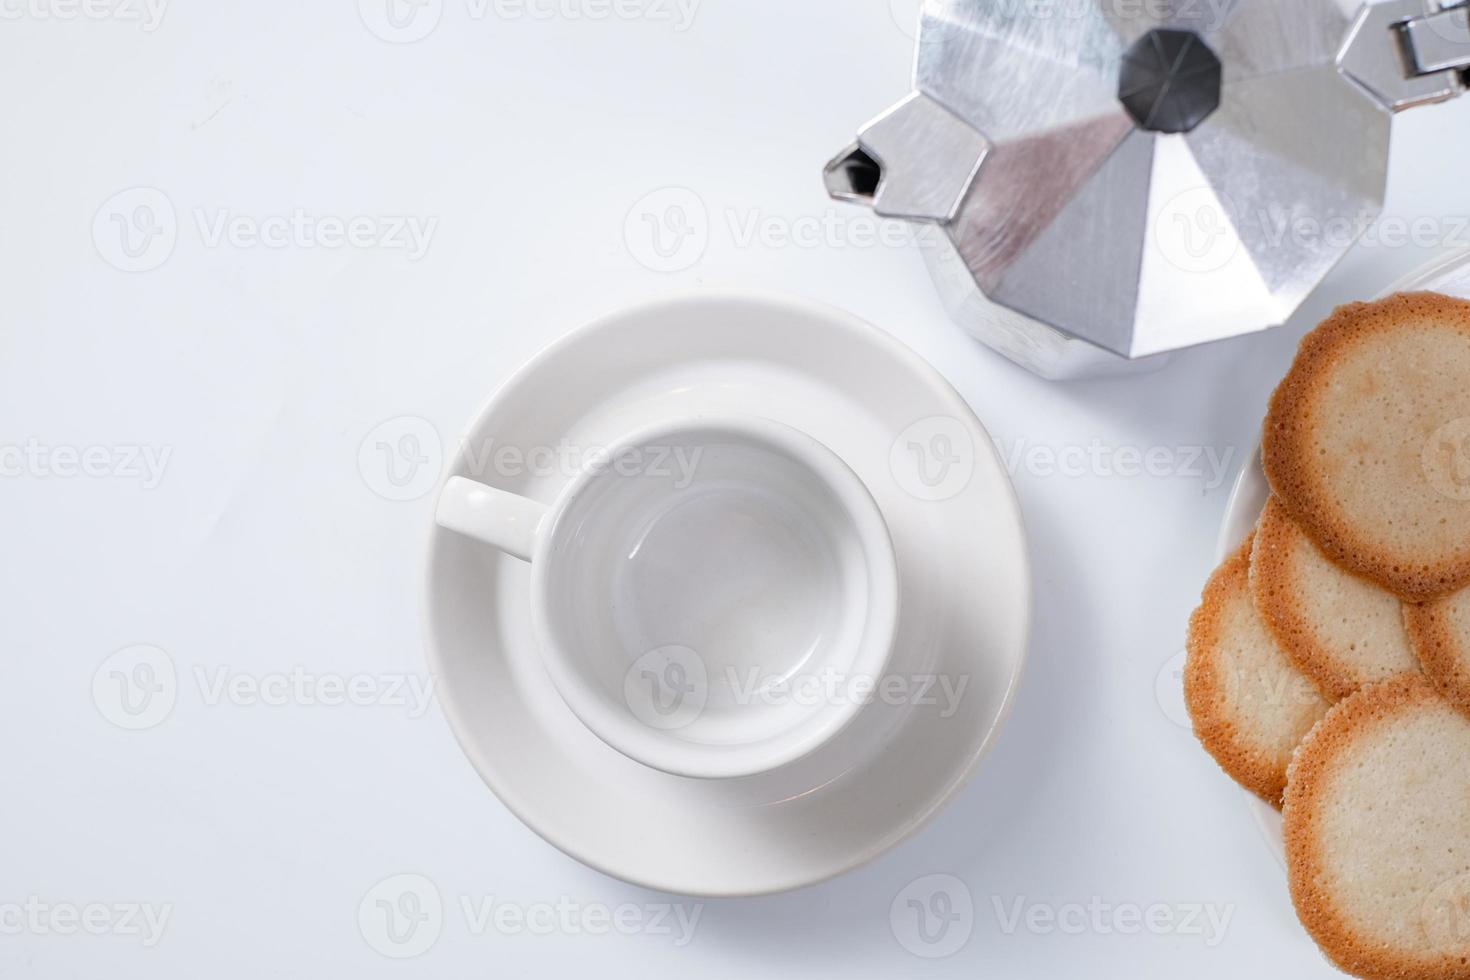 leere Kaffeetasse mit Keksen auf weißem Hintergrund foto